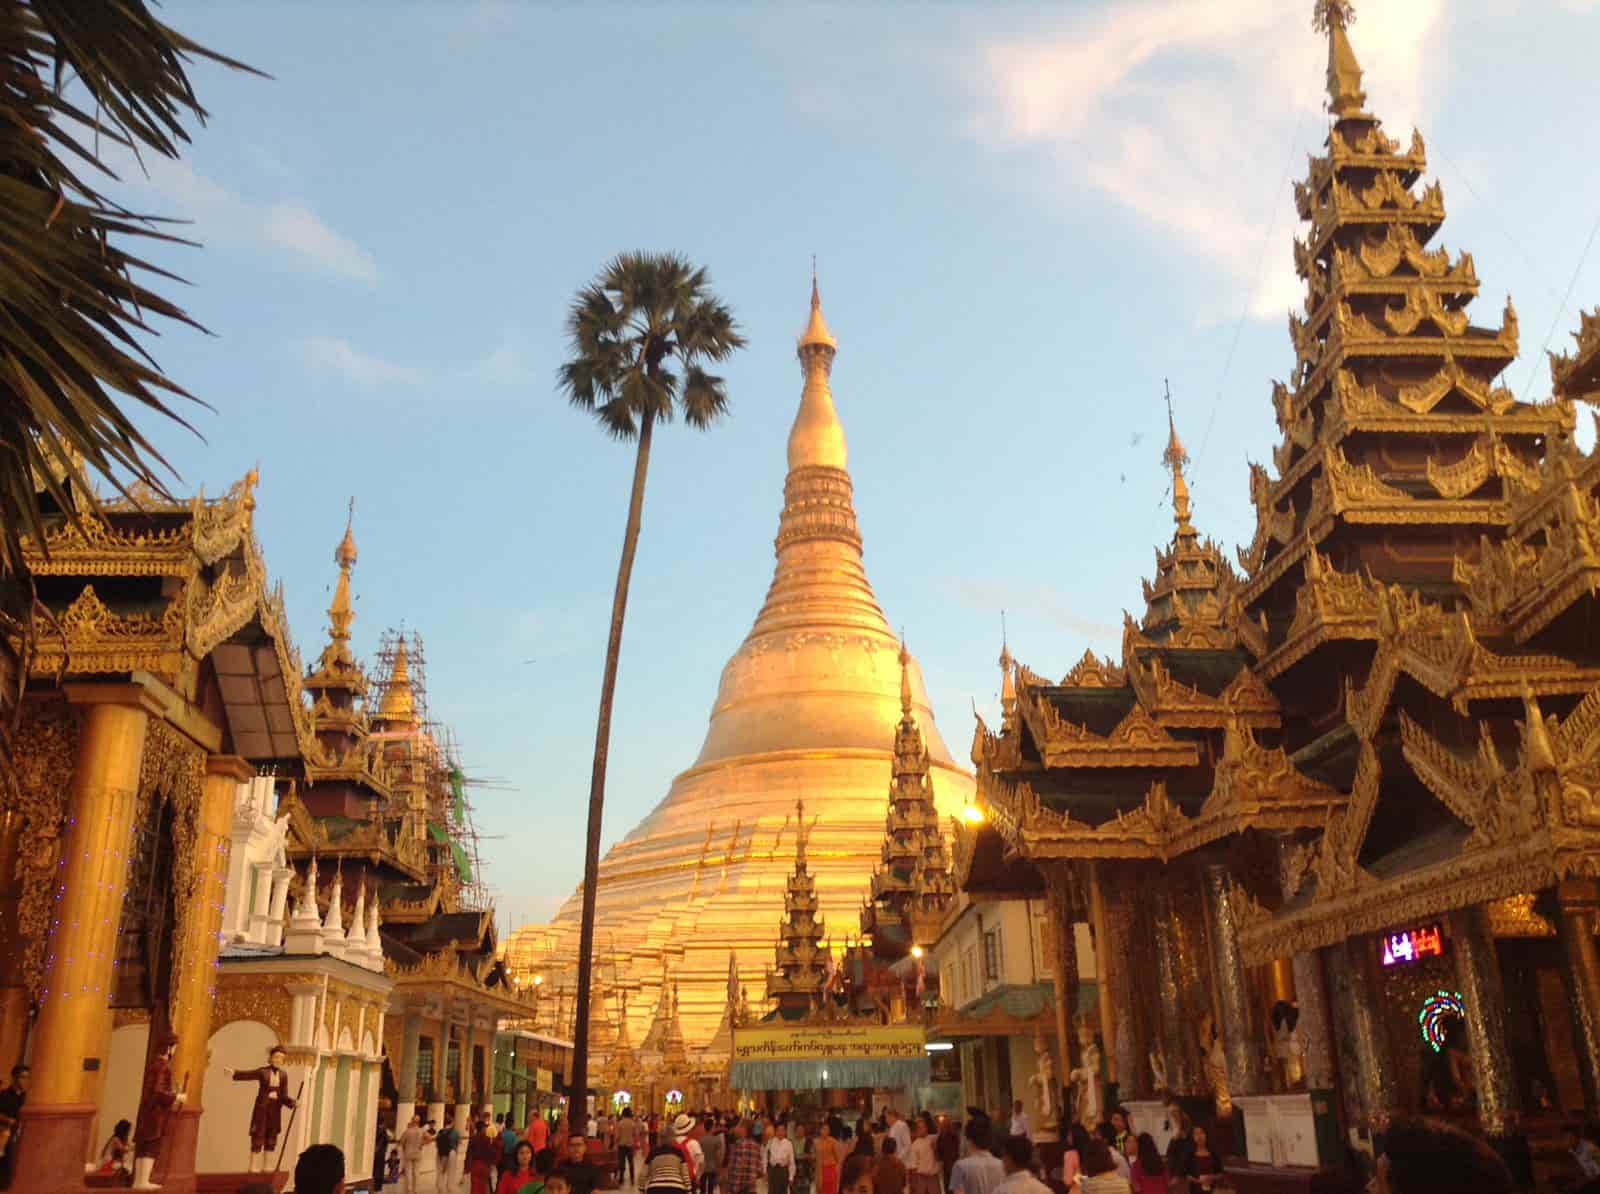 Myanmar é um destino exótico, ainda pouco conhecido pelos turistas do mundo todo. Por isso, revelo um pouco das belezas que vi por lá.